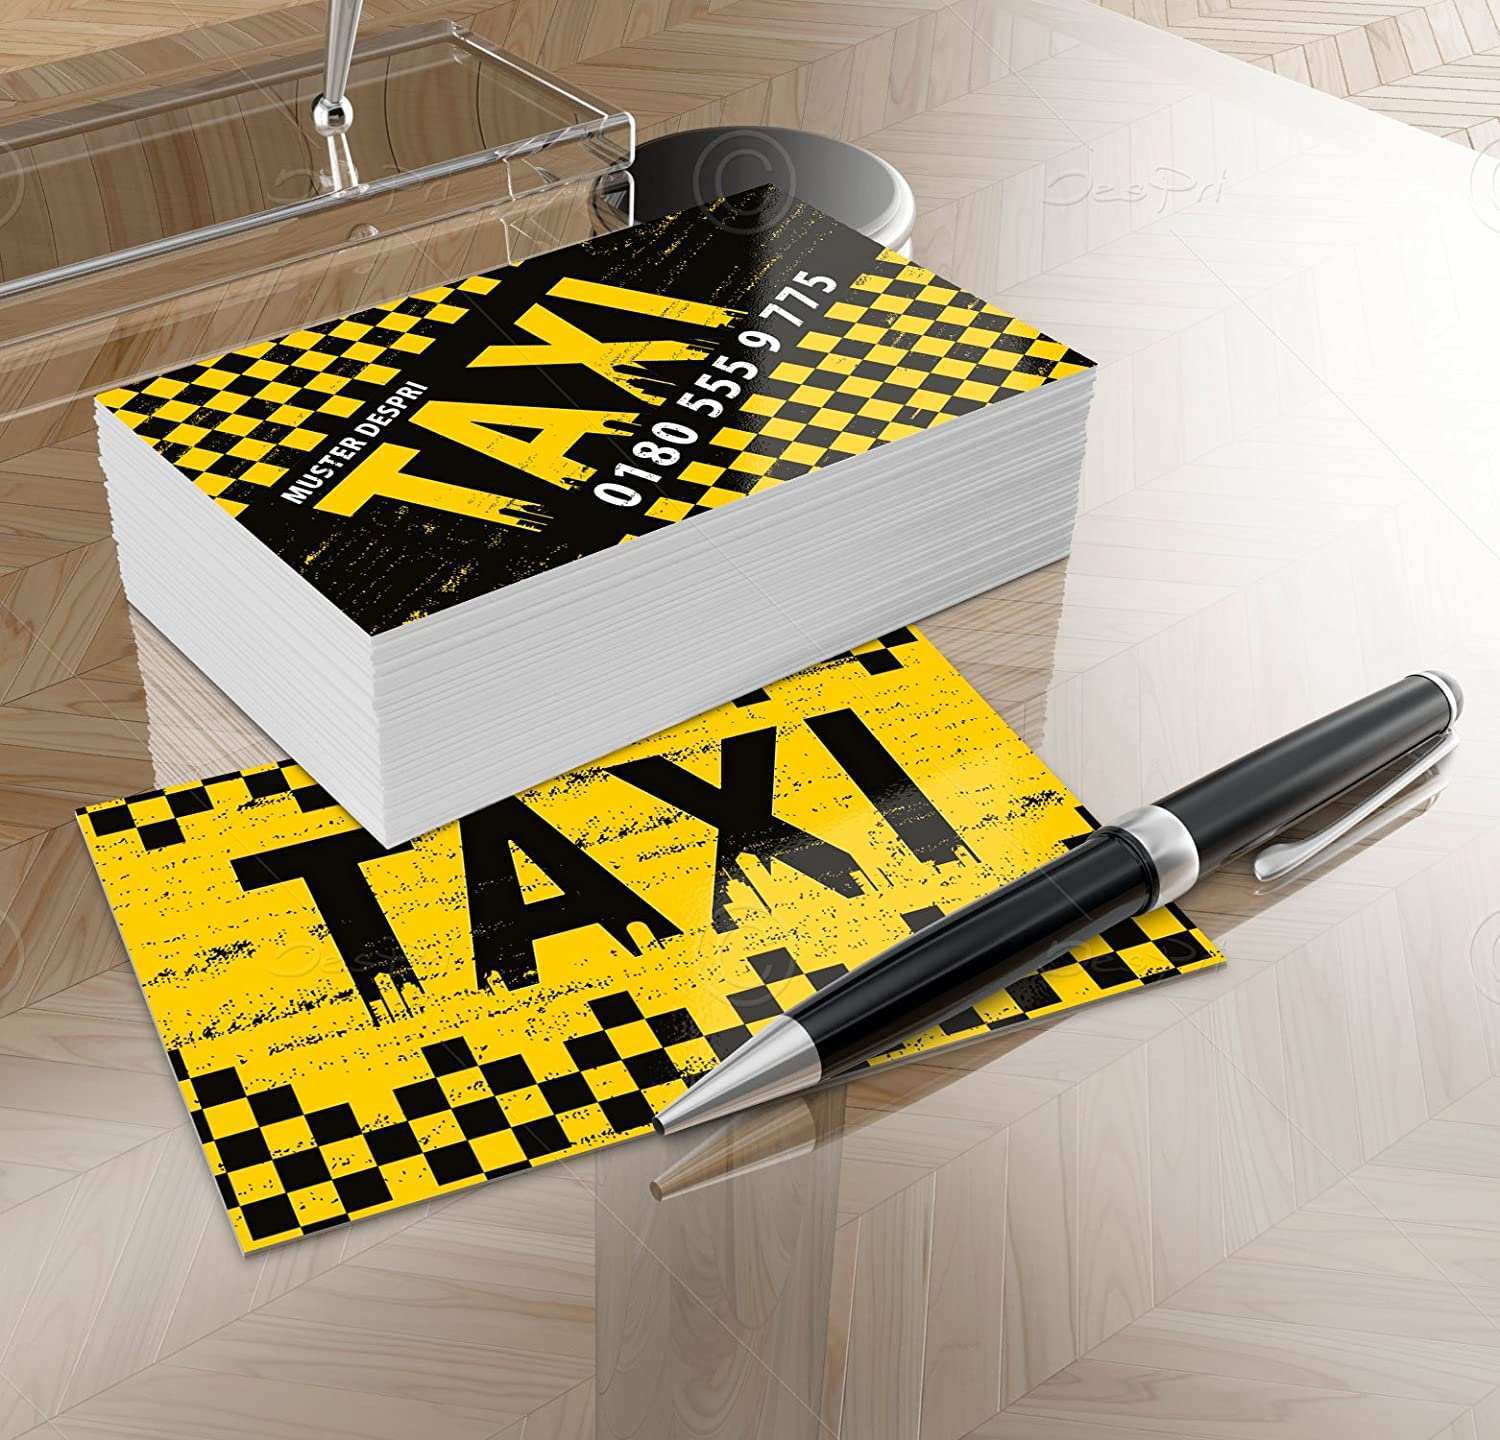 Taxi Visitenkarten Online Gestalten Designed Fur Taxifahrer Taxibetriebe Vk013 500 Stuck Matt Amazon De Burobedarf Schreibwaren